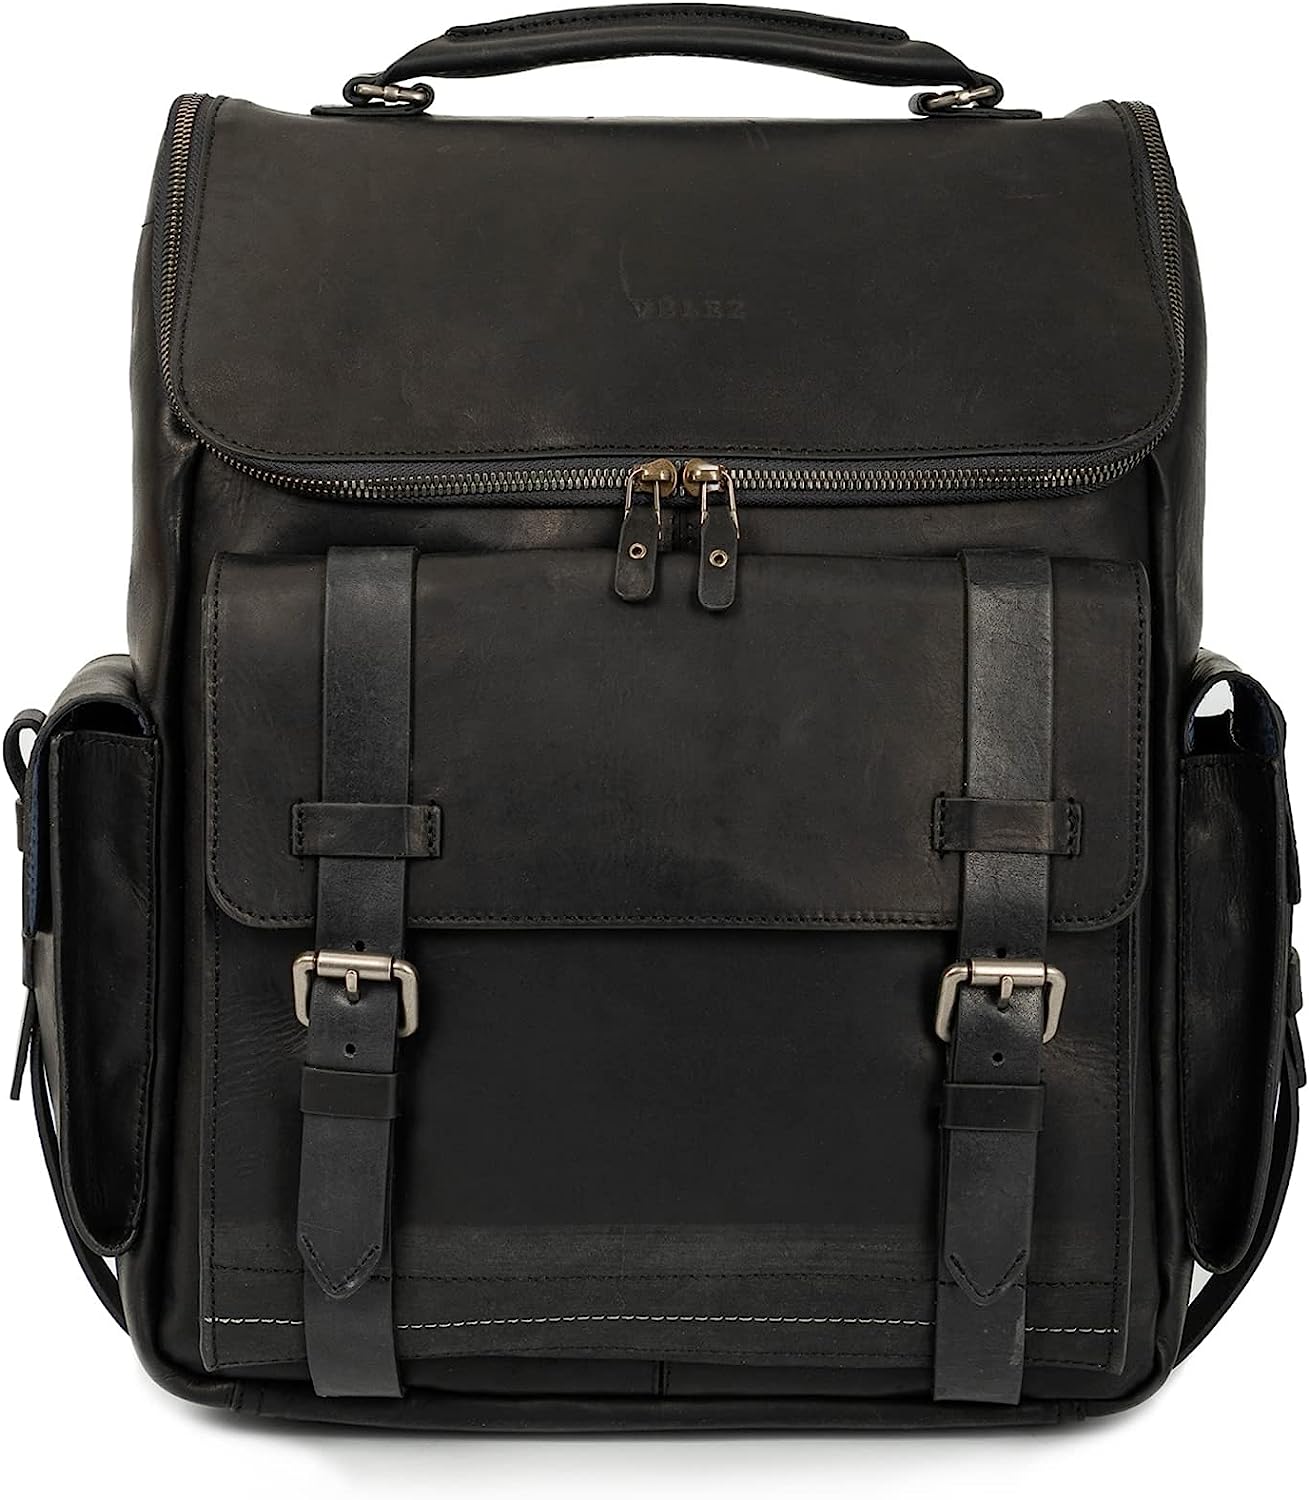 VELEZ Full Grain Leather Backpack for Men - 15 Inch Laptop Bag - Vintage Travel Rucksack - Casual Daypack for Women